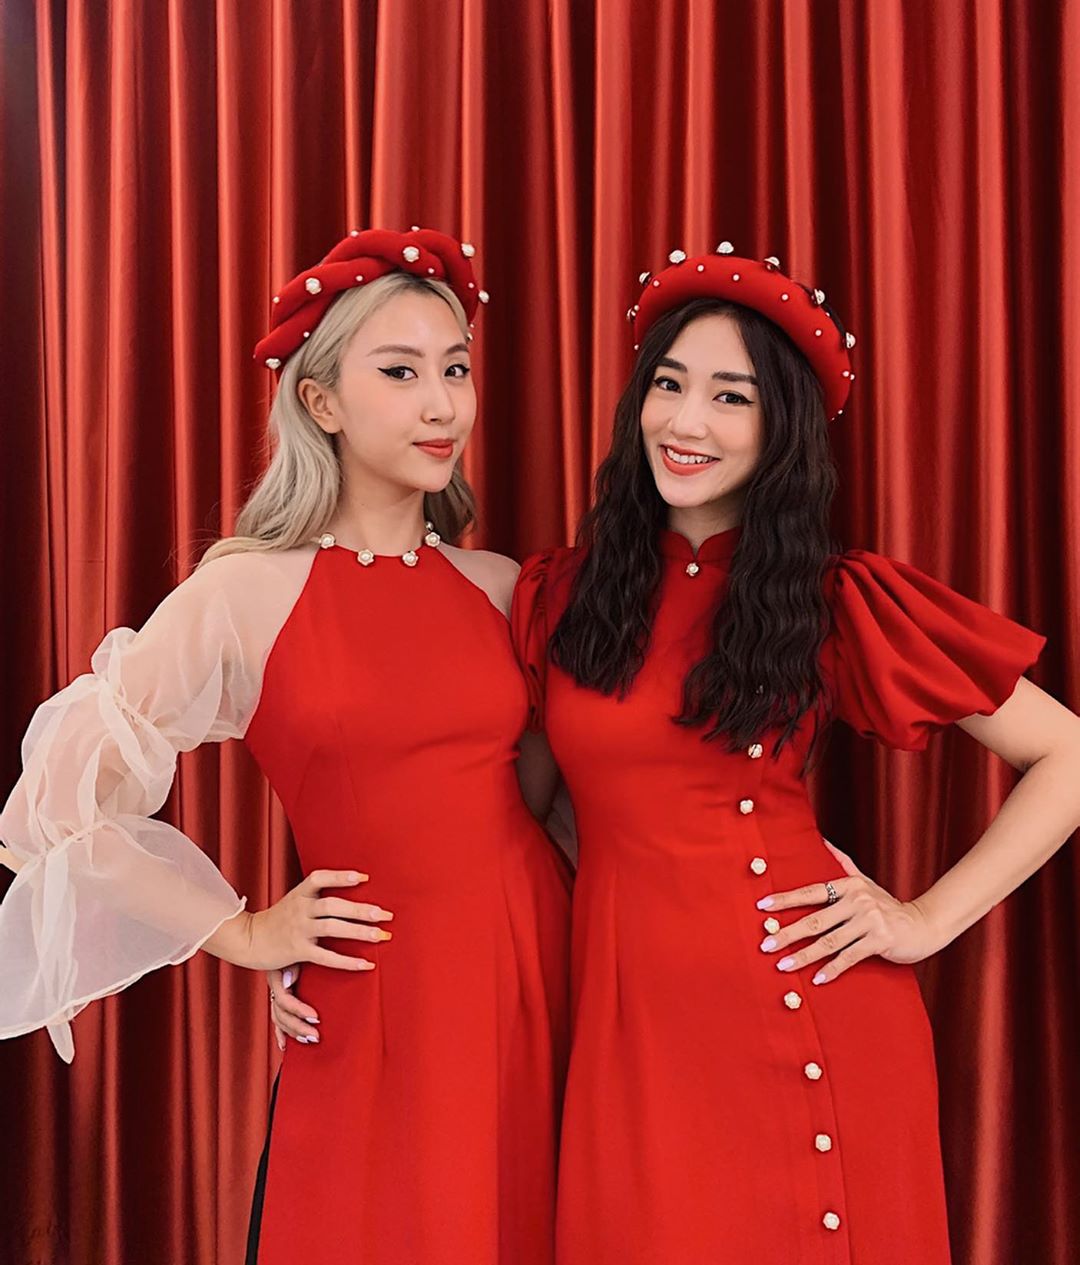 Váy Bầu nhung tăm đỏ đô phối tay trắng gắn nơ xinh xắn-mặc tết,noel cực đẹp  luôn | Shopee Việt Nam